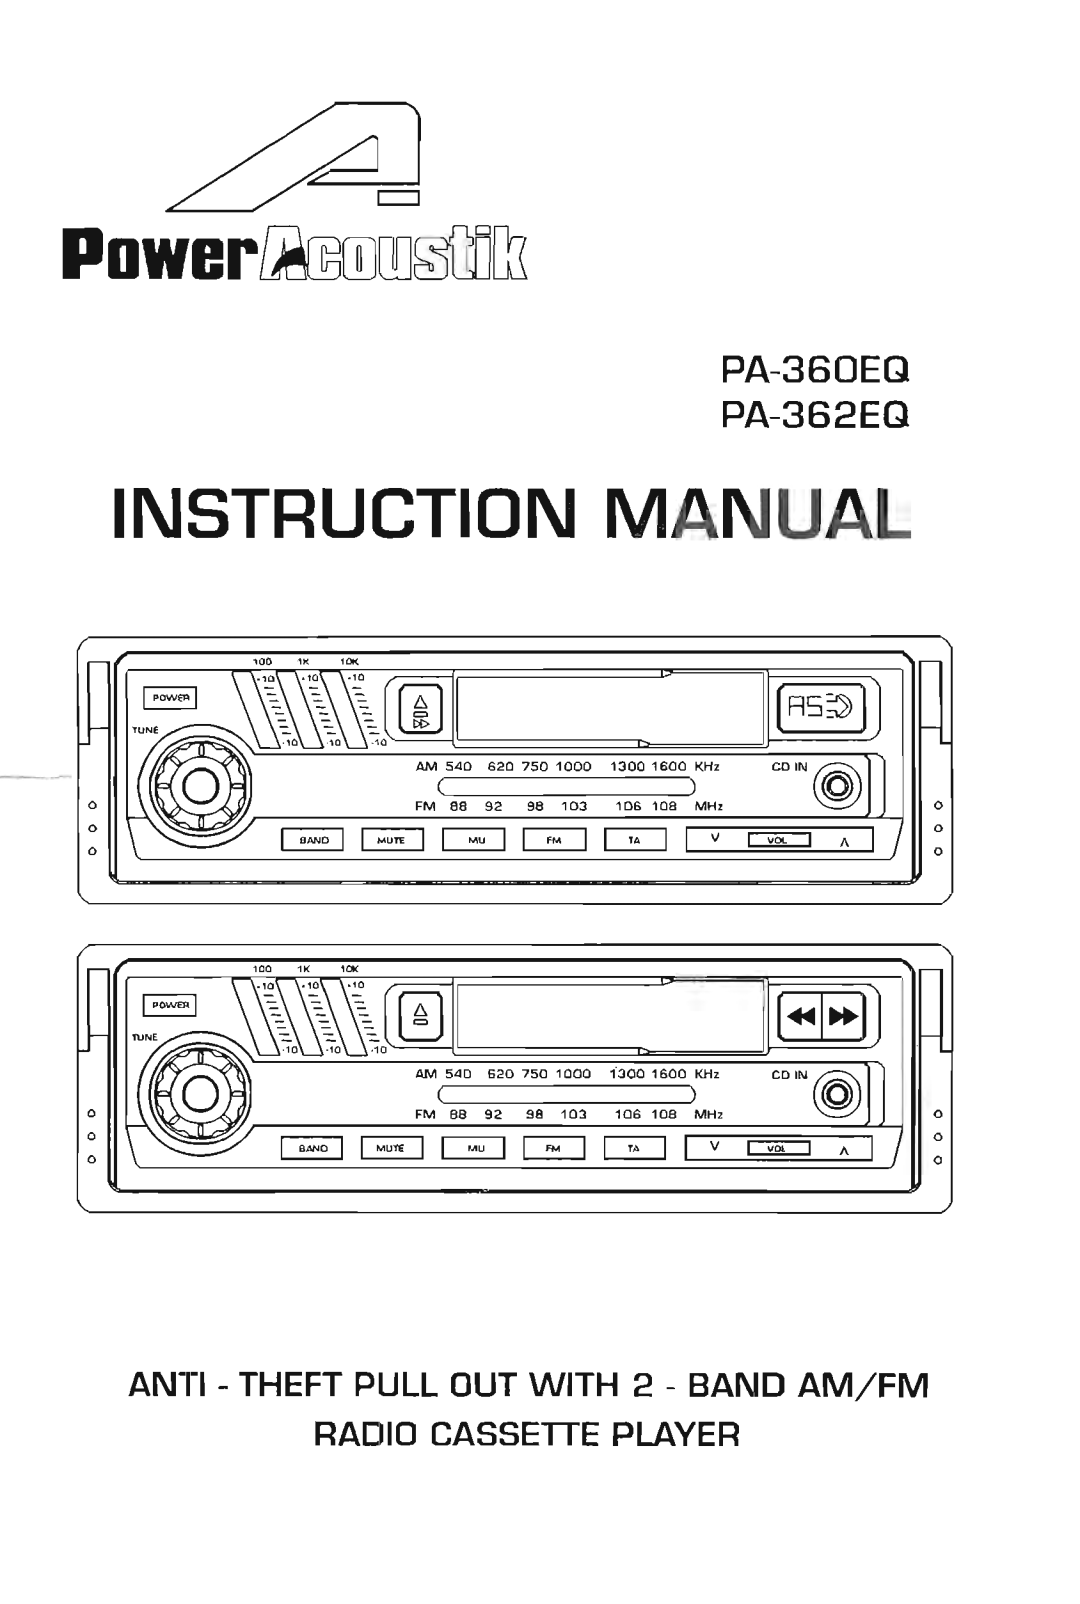 Power Acoustik PA-362EQ, PA-360EQ manual 